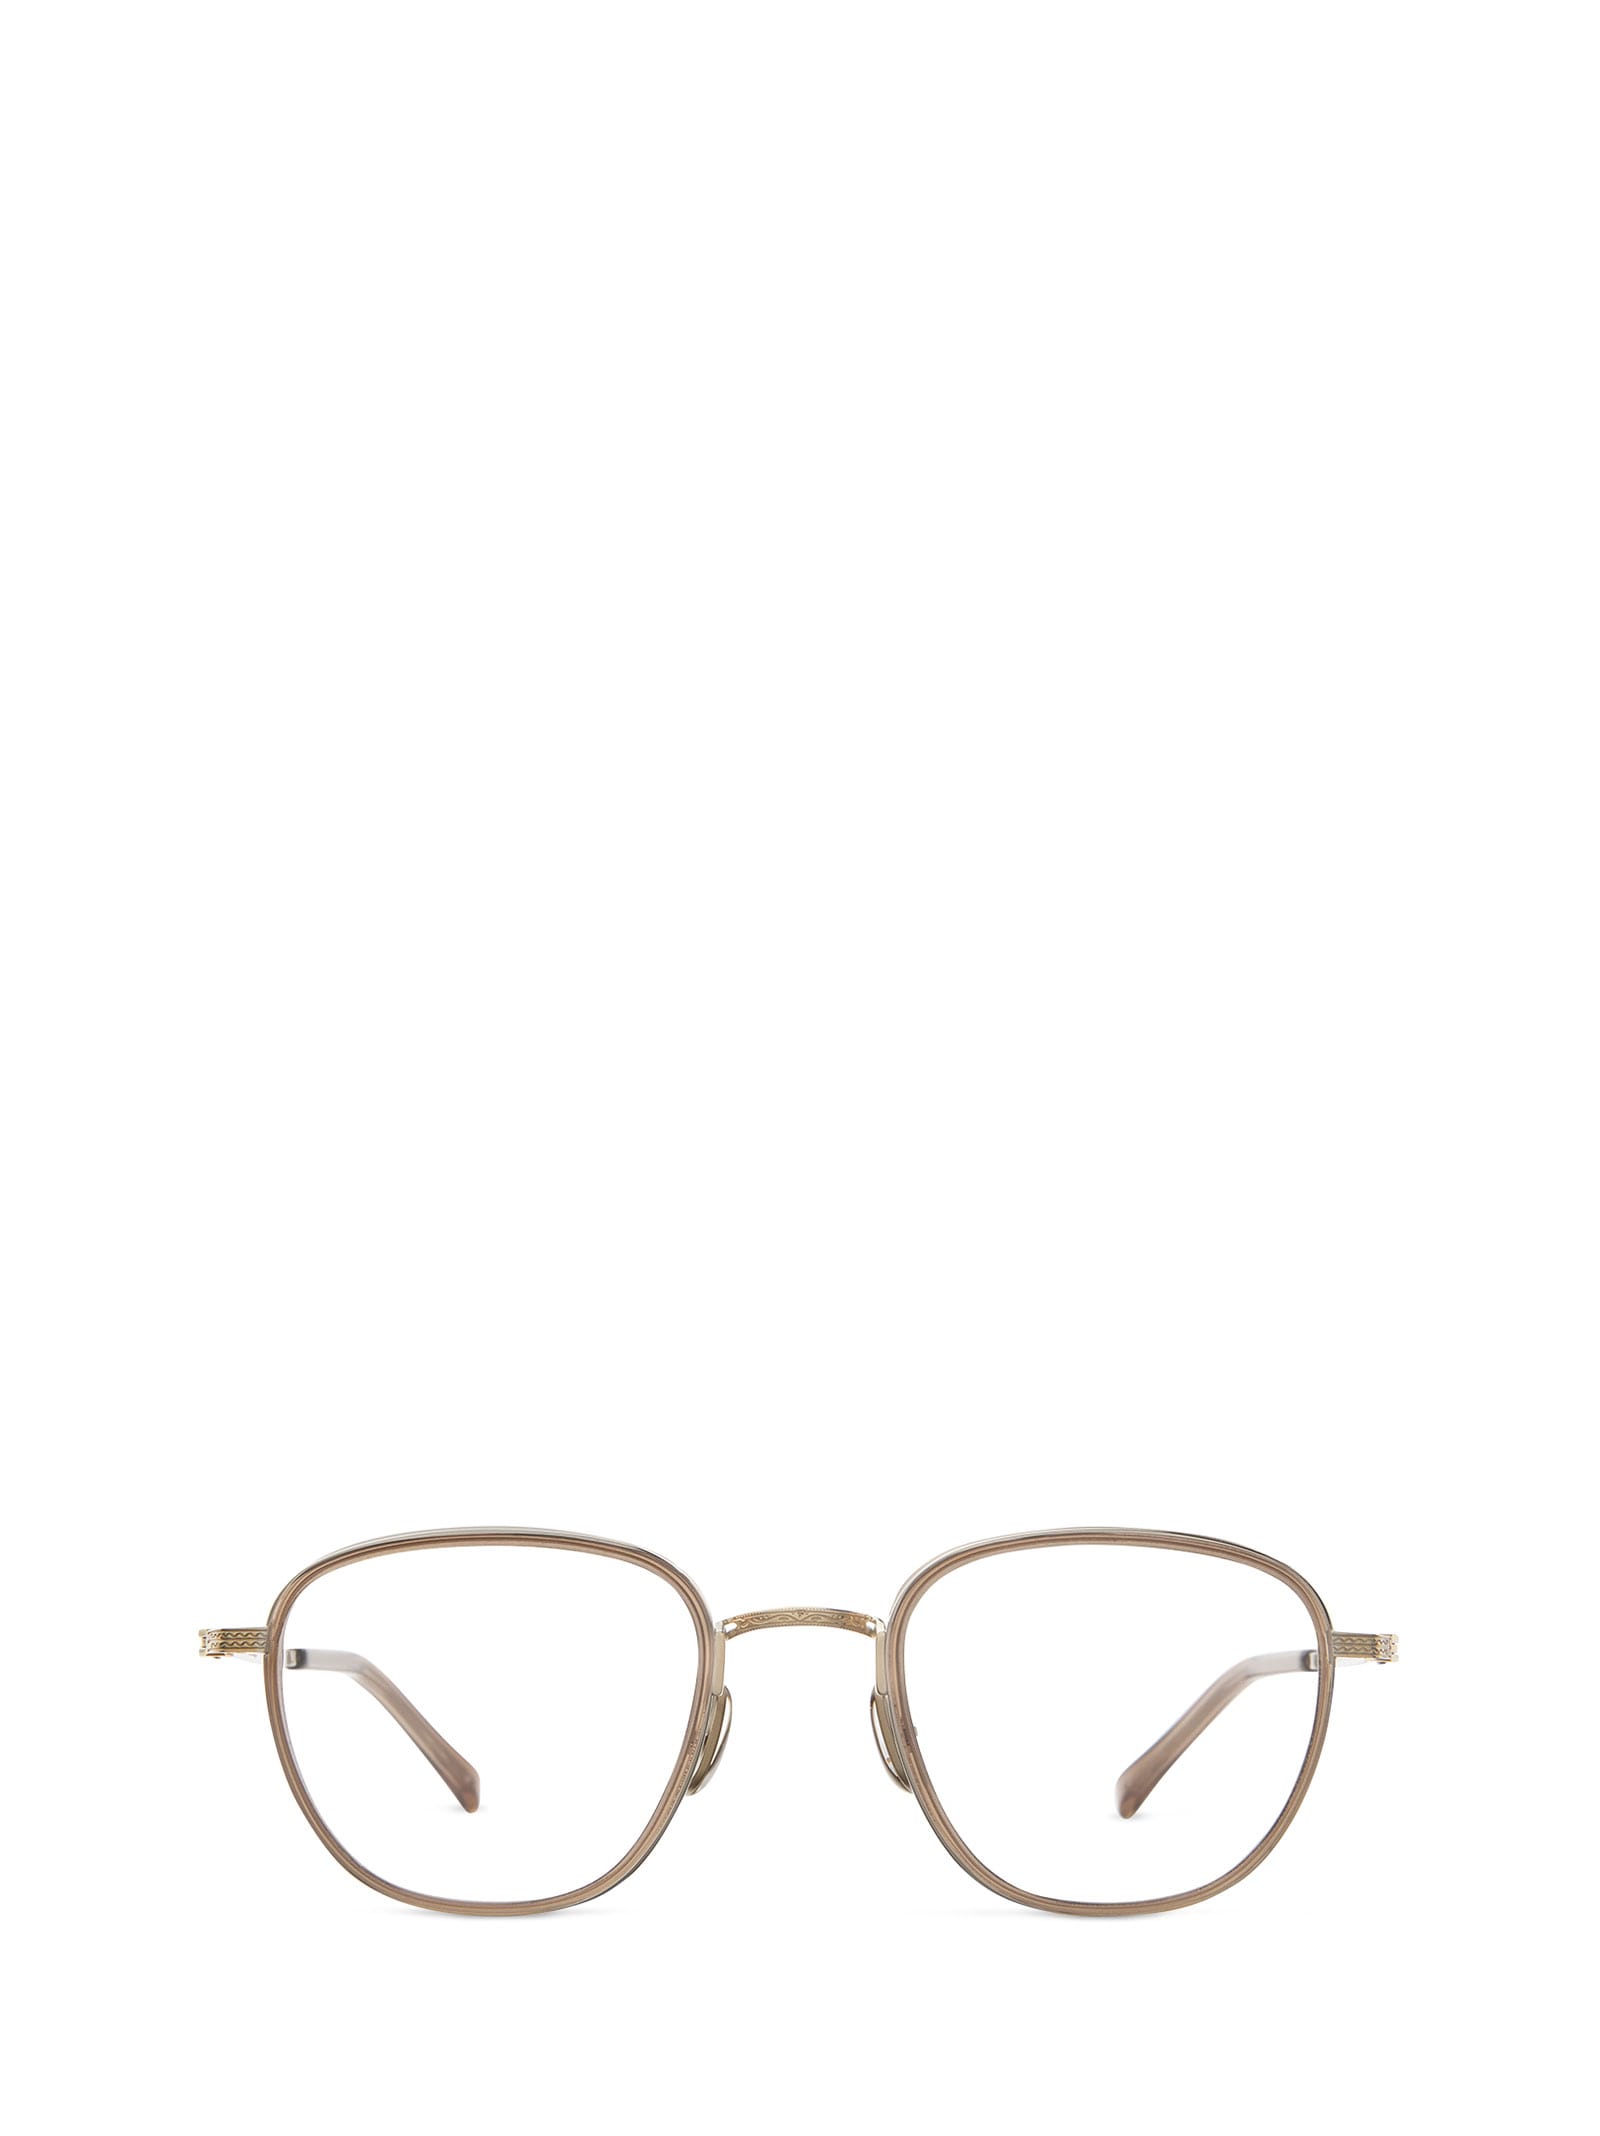 Griffith Ii C Topaz-12k White Gold Glasses